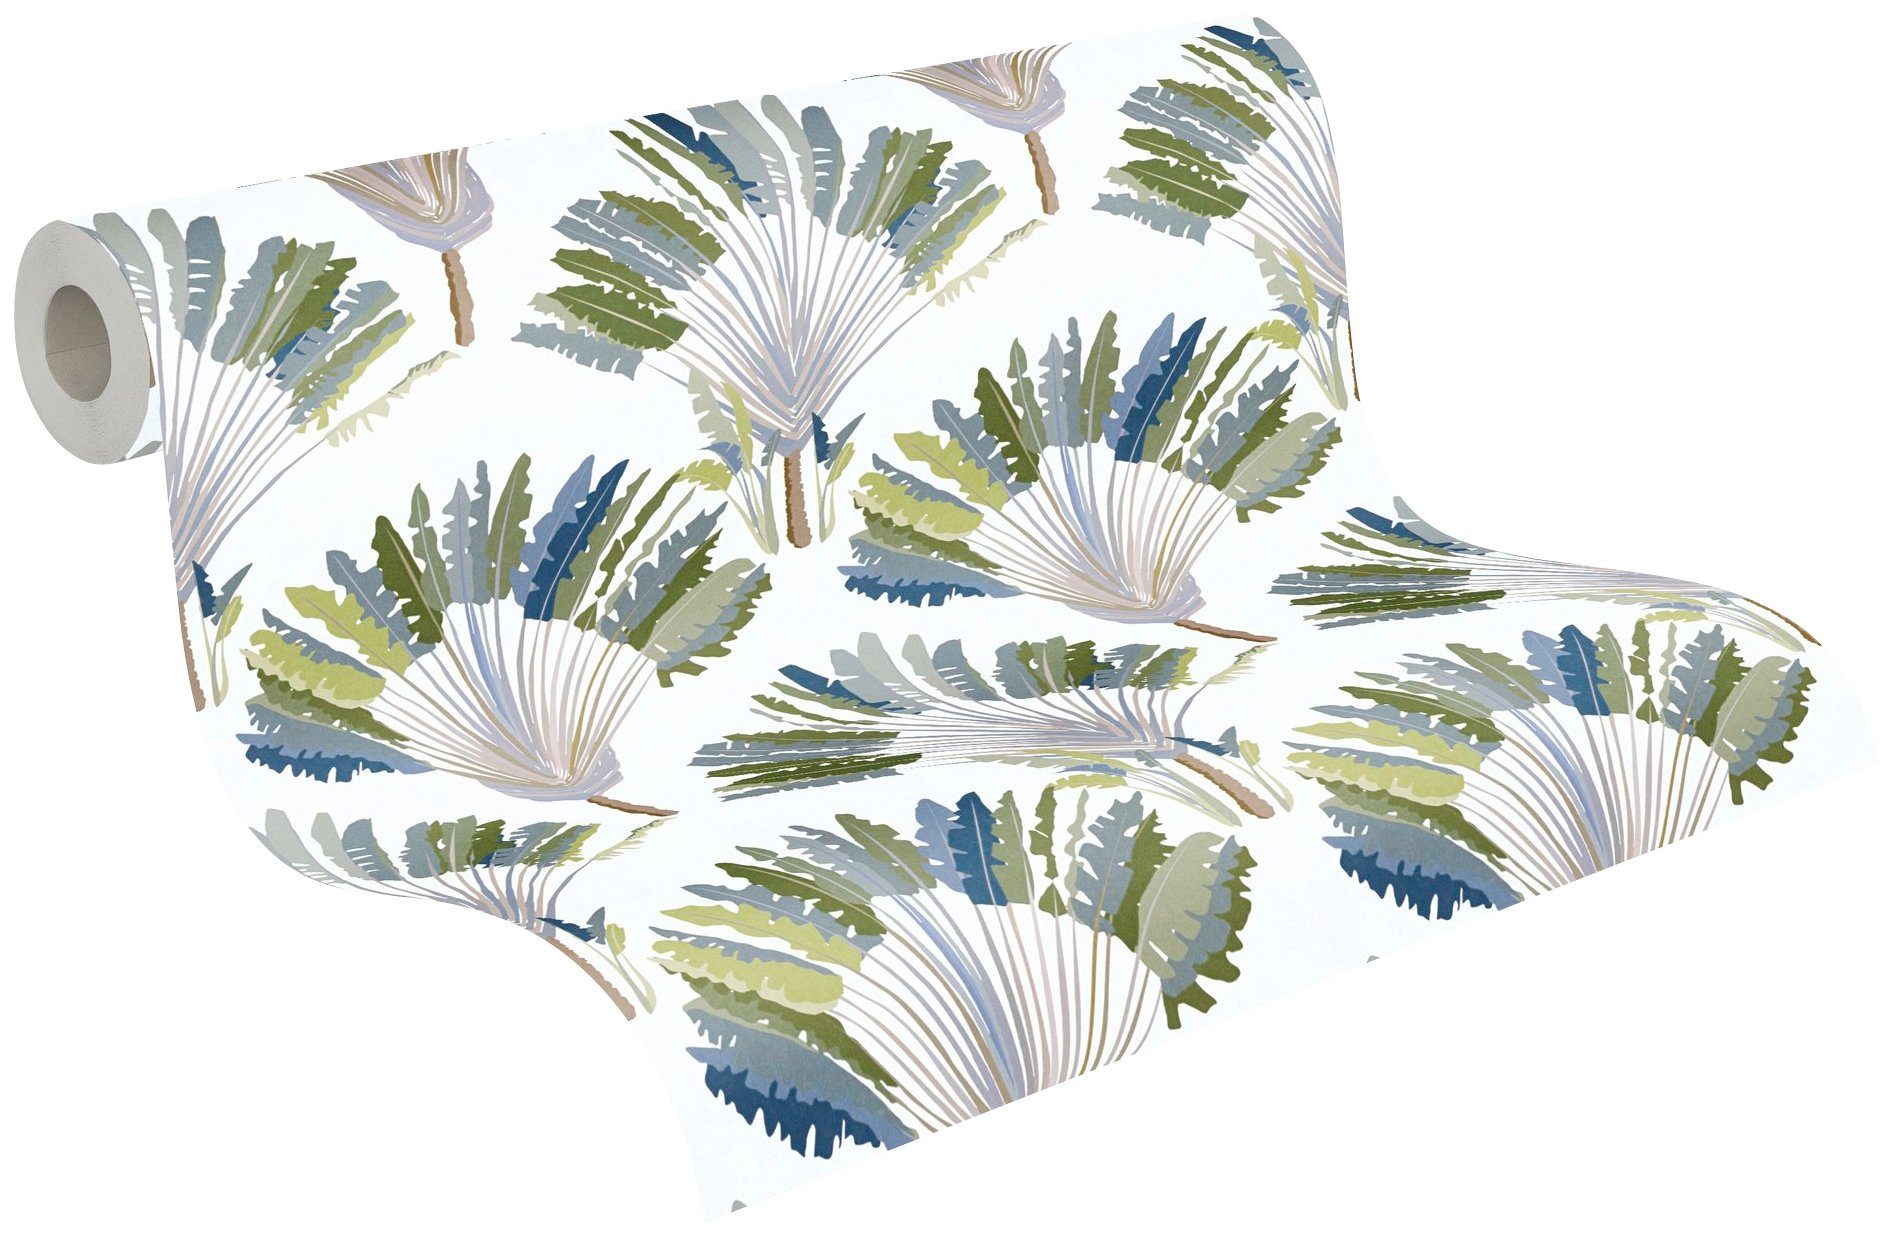 Vliestapete Jungle grün/weiß/blau Palmentapete Federn floral, botanisch, Architects tropisch, Dschungel Paper glatt, Tapete Chic,